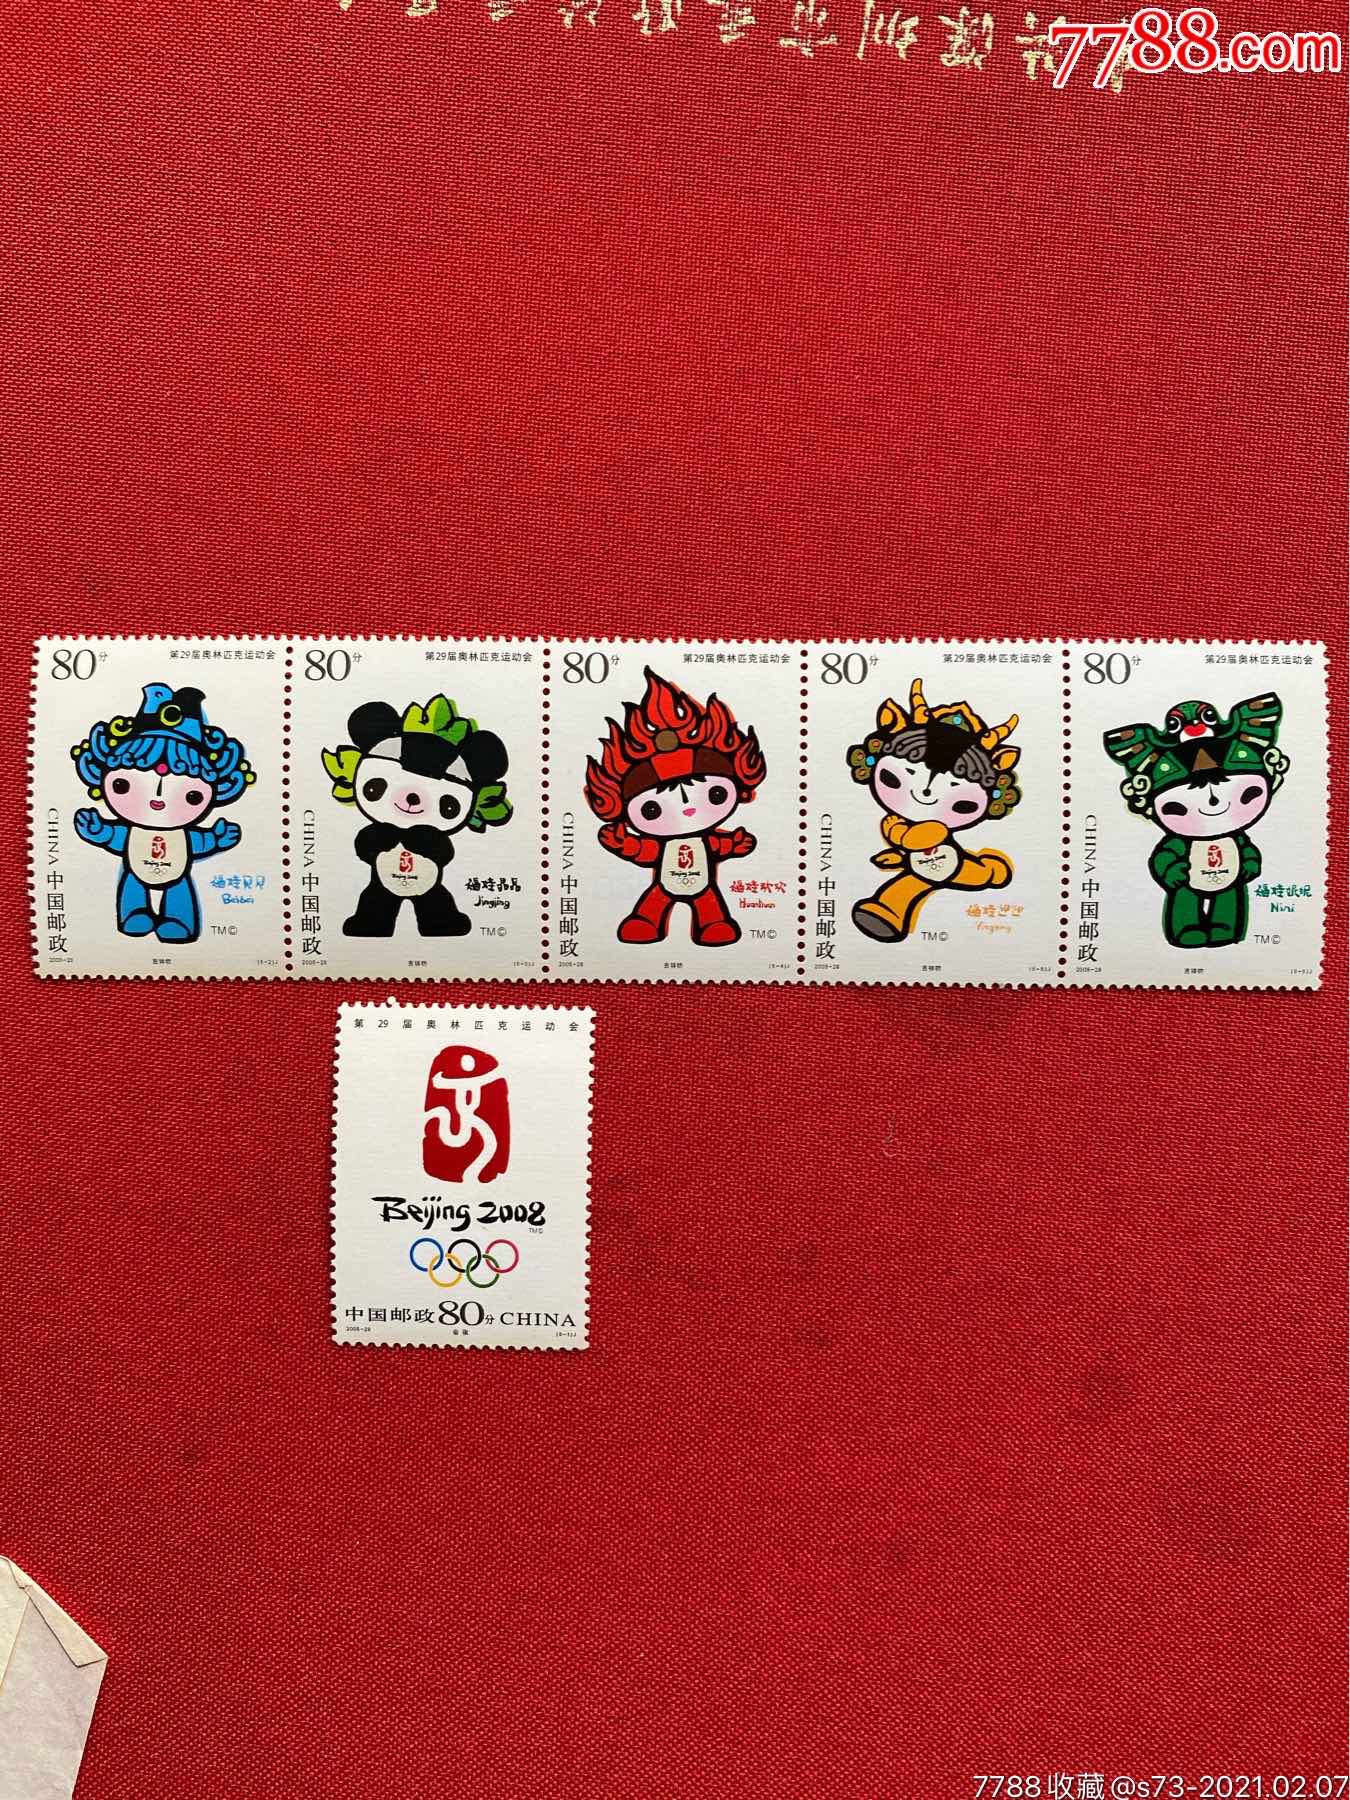 奥运邮票大全套39800图片